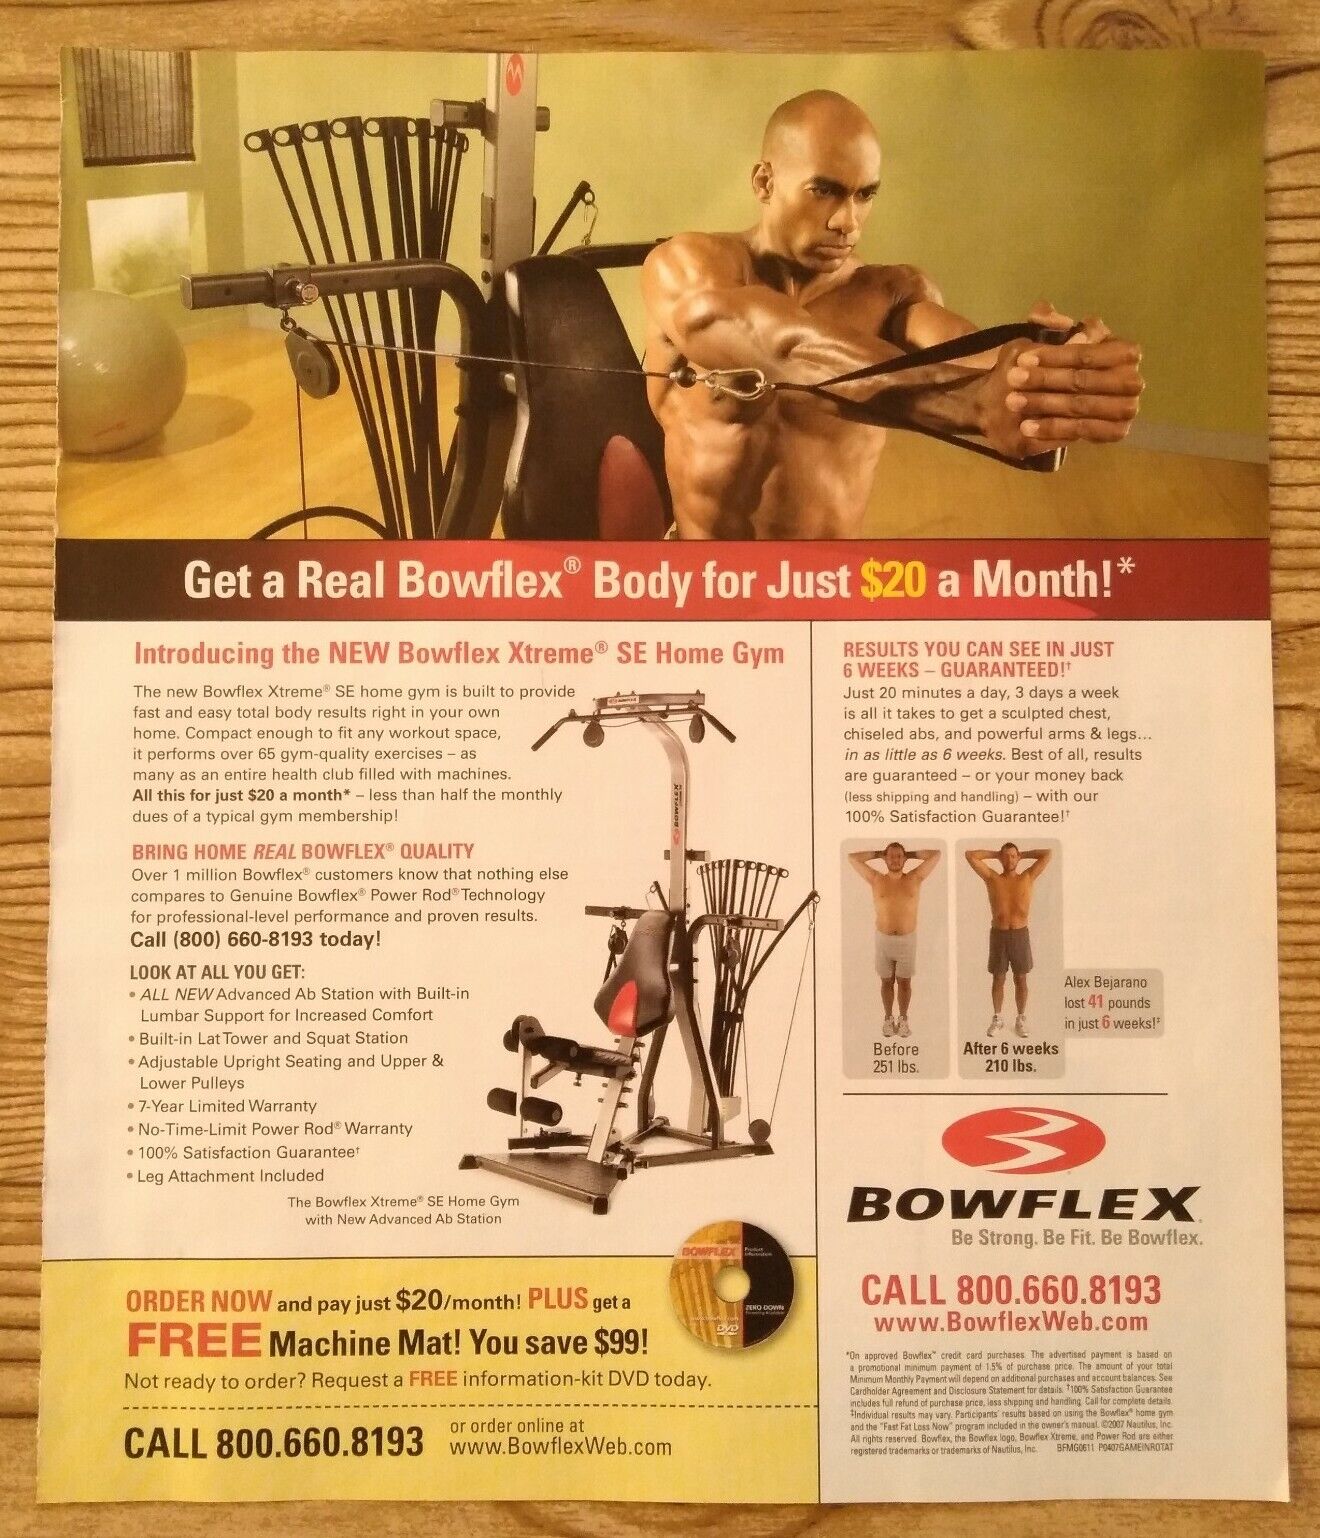 2007 Bowflex Body Xtreme SE Home Gym Muscular Man Photo Vintage Print Ad 